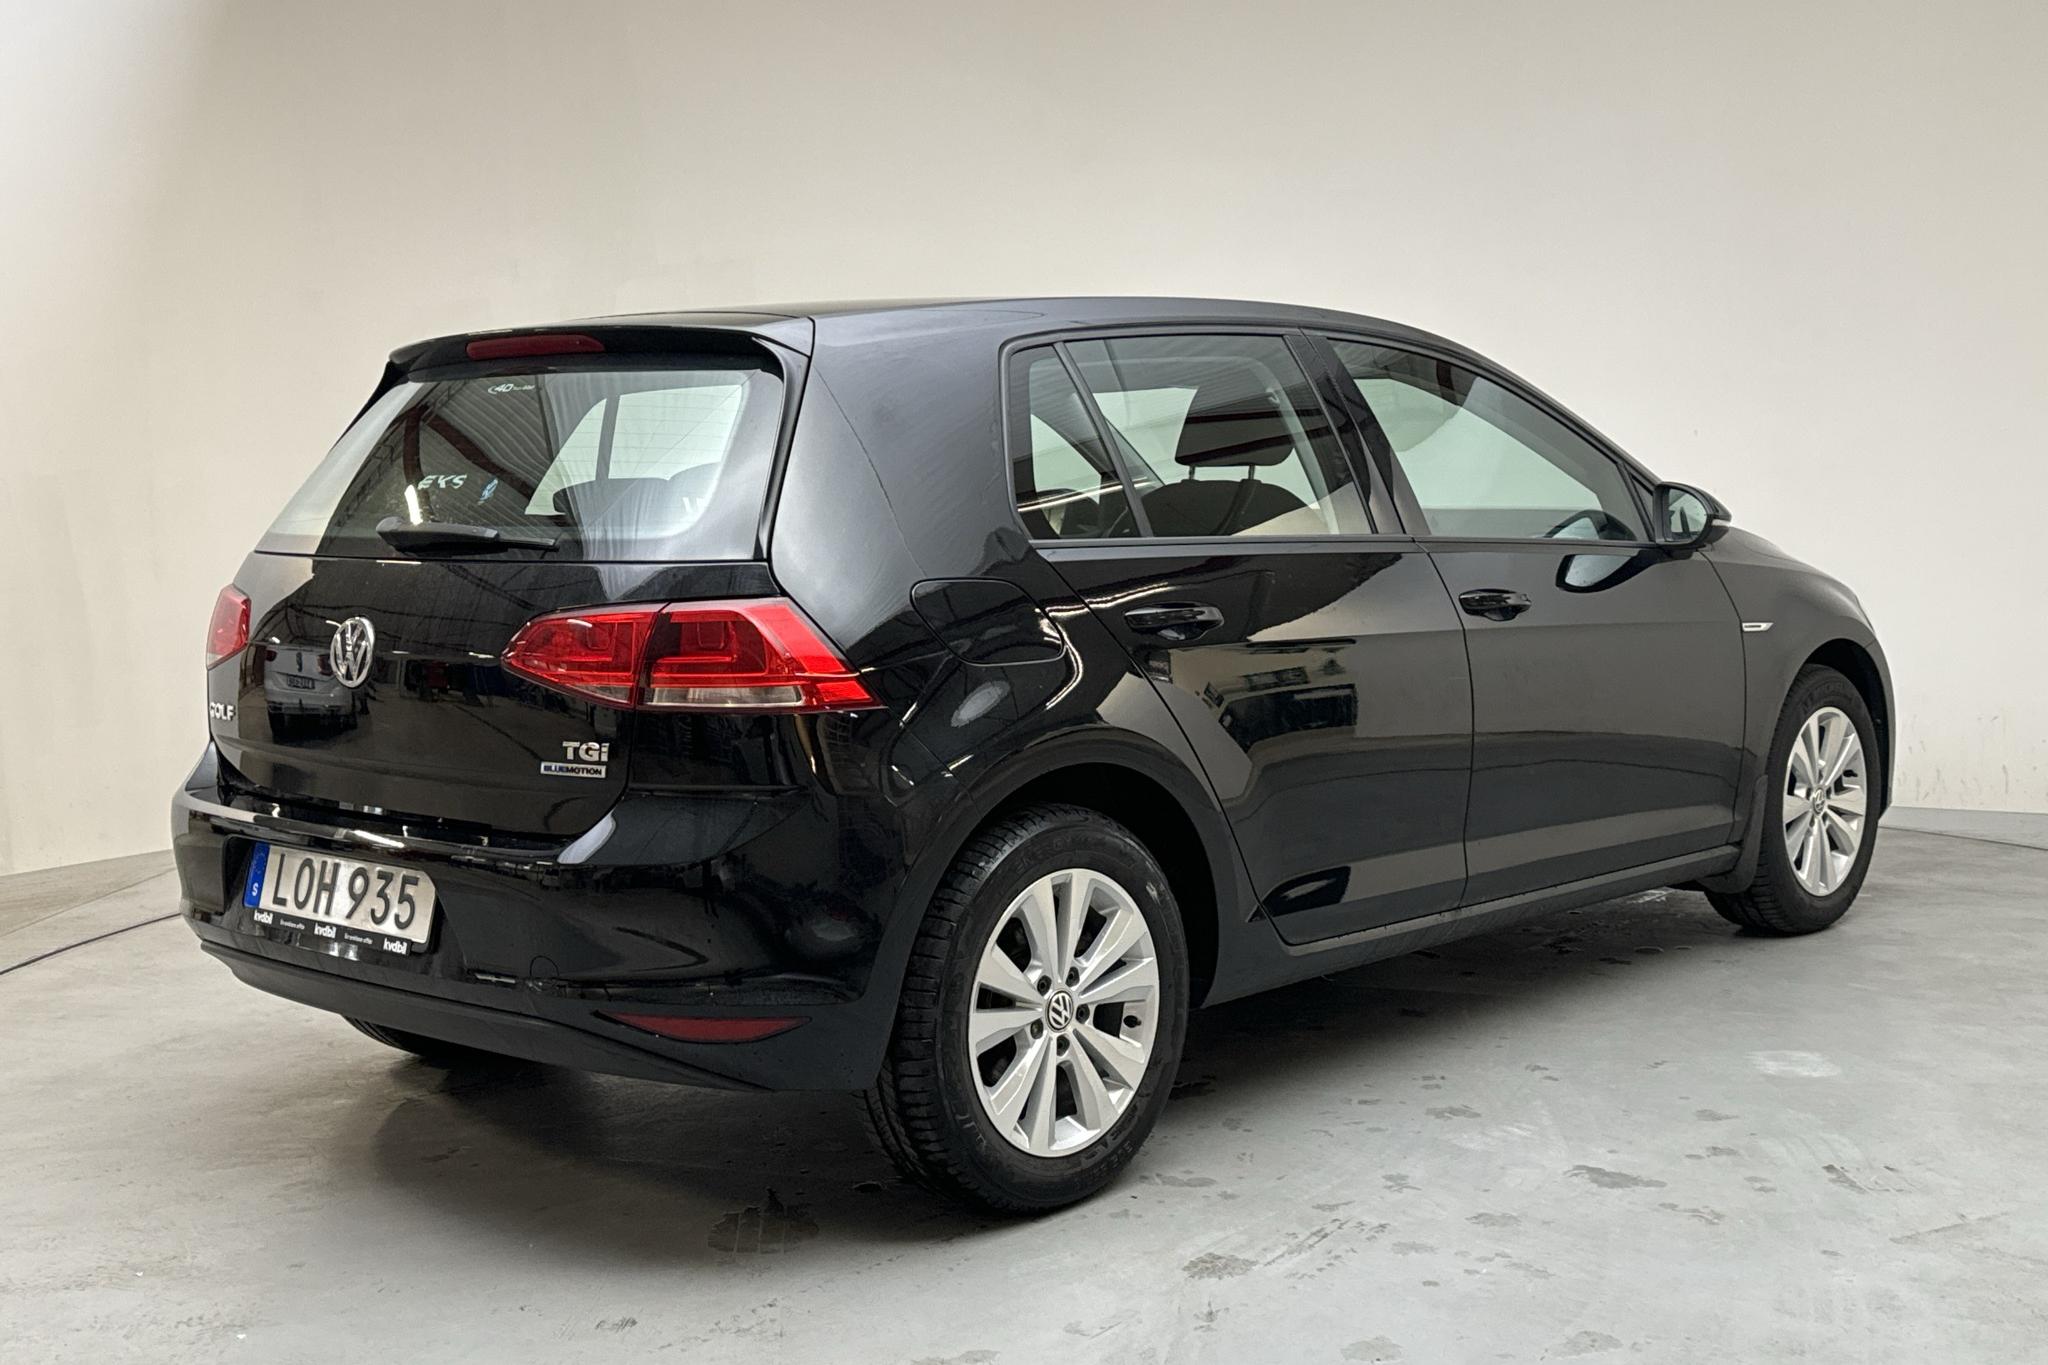 VW Golf VII 1.4 TGI 5dr (110hk) - 54 530 km - Manual - black - 2015